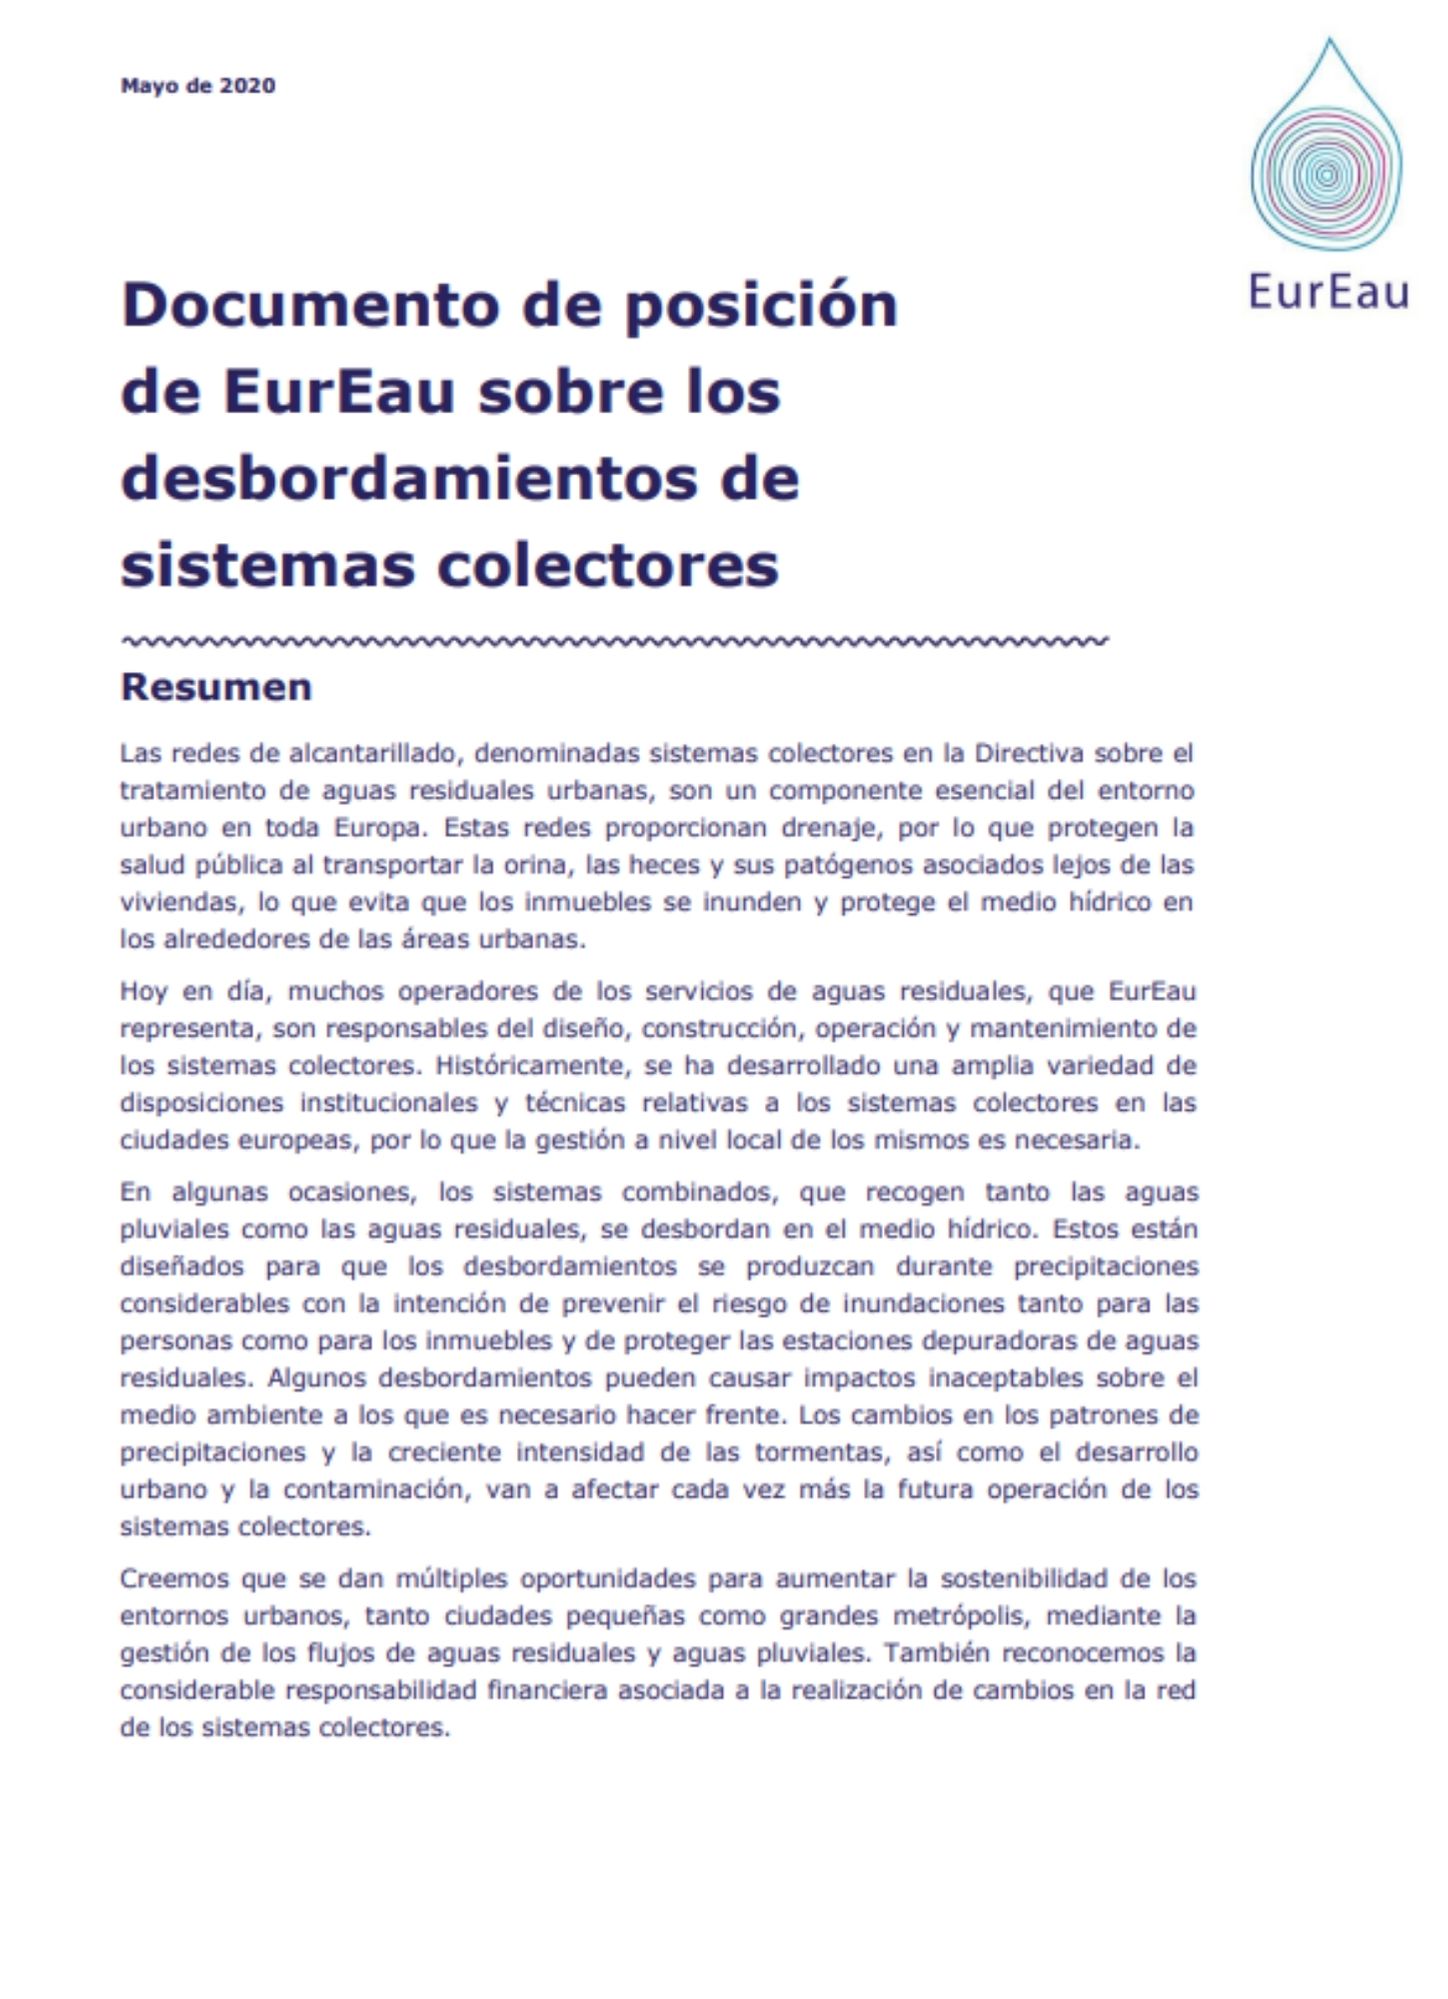 Documento de posición - EurEau Desbordamientos de sistemas colectores